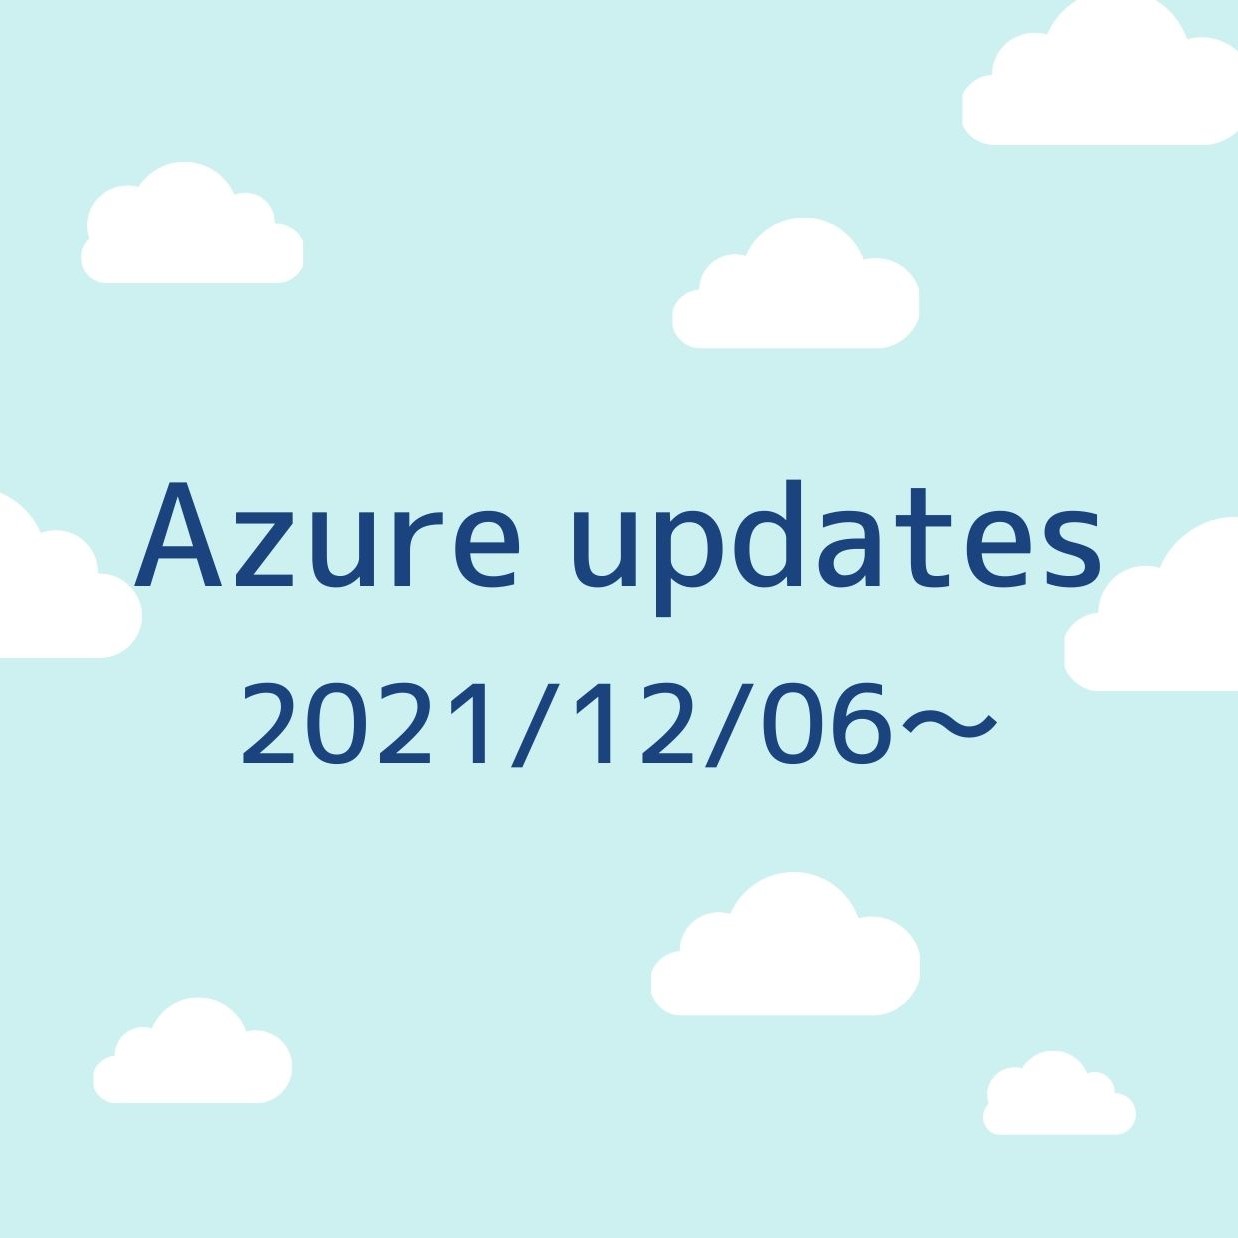 2021/12/06週の Azure updates 日本語速報